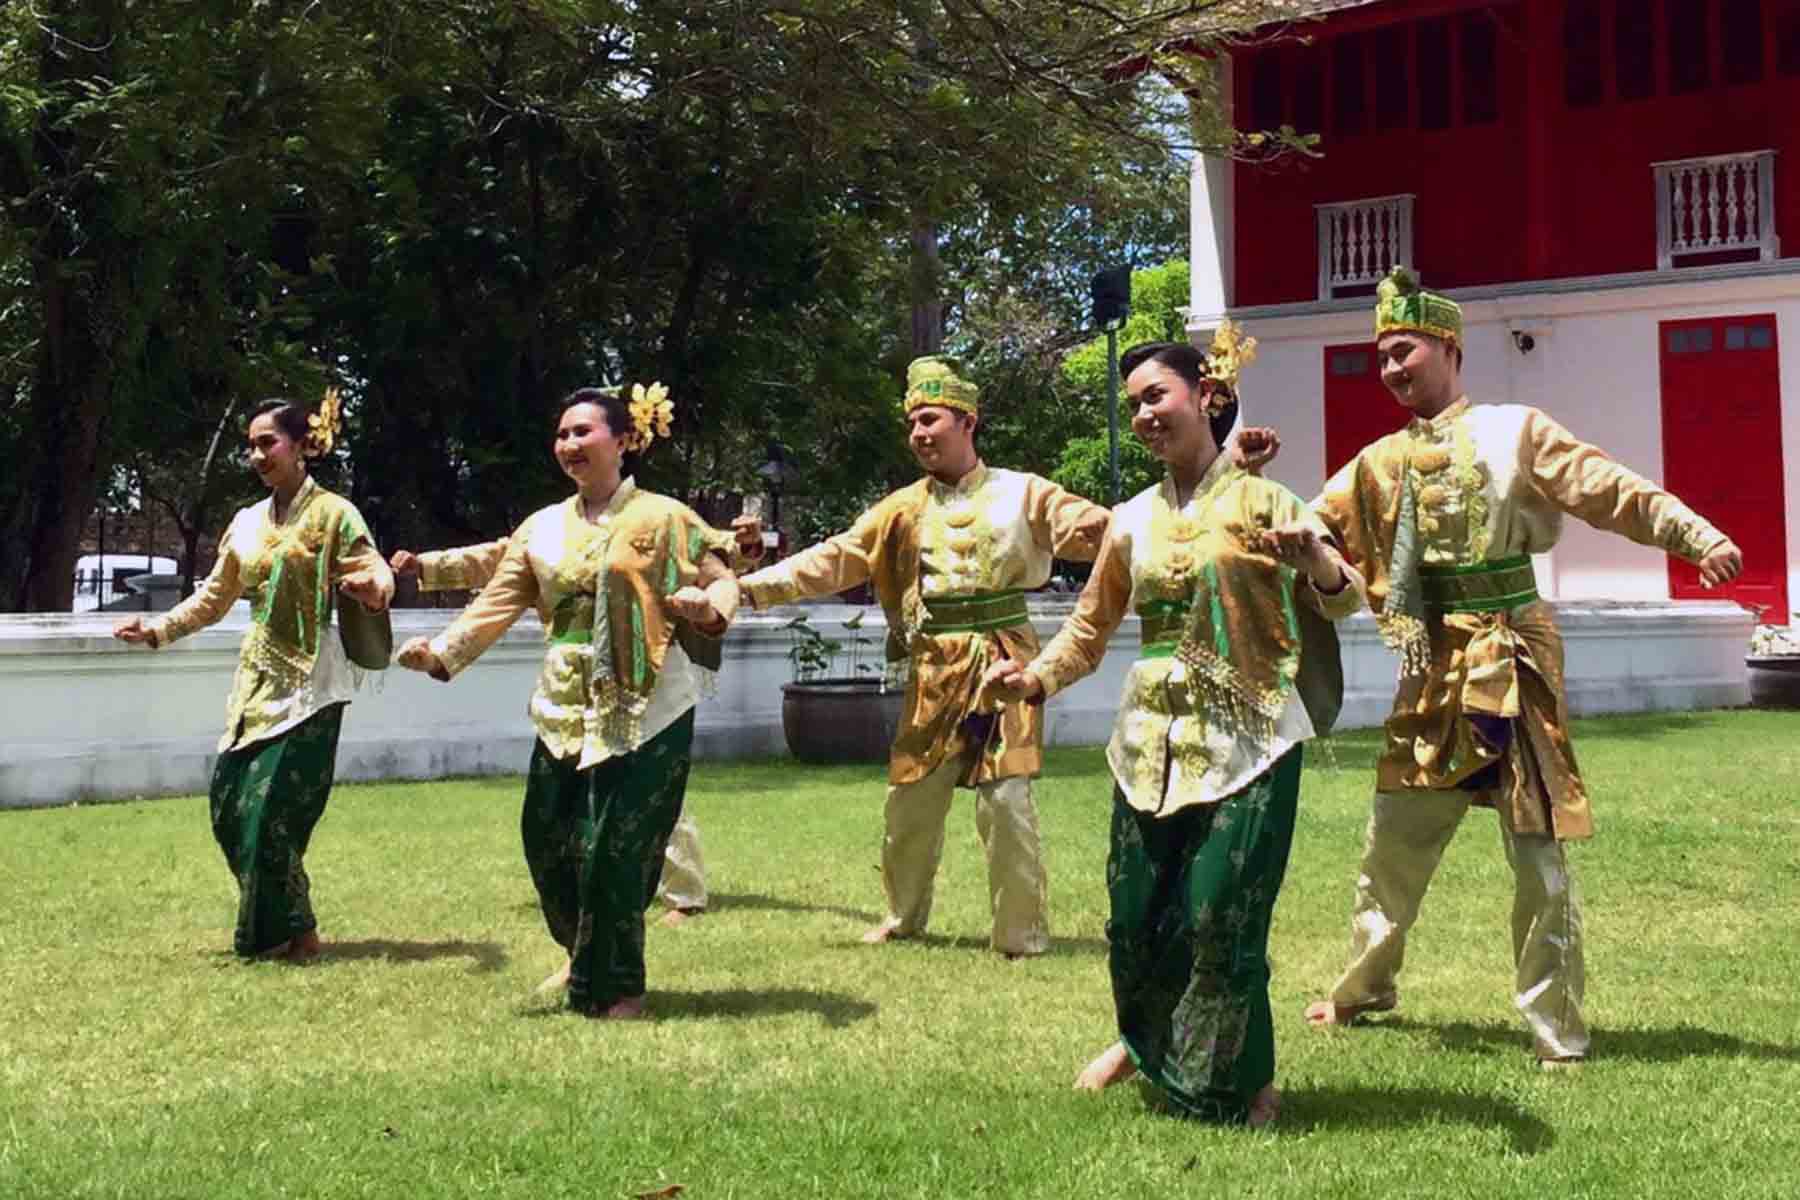 มรภ.สงขลา เป็นตัวแทนประเทศไทย โชว์การแสดงเทศกาลซาปินนานาชาติ